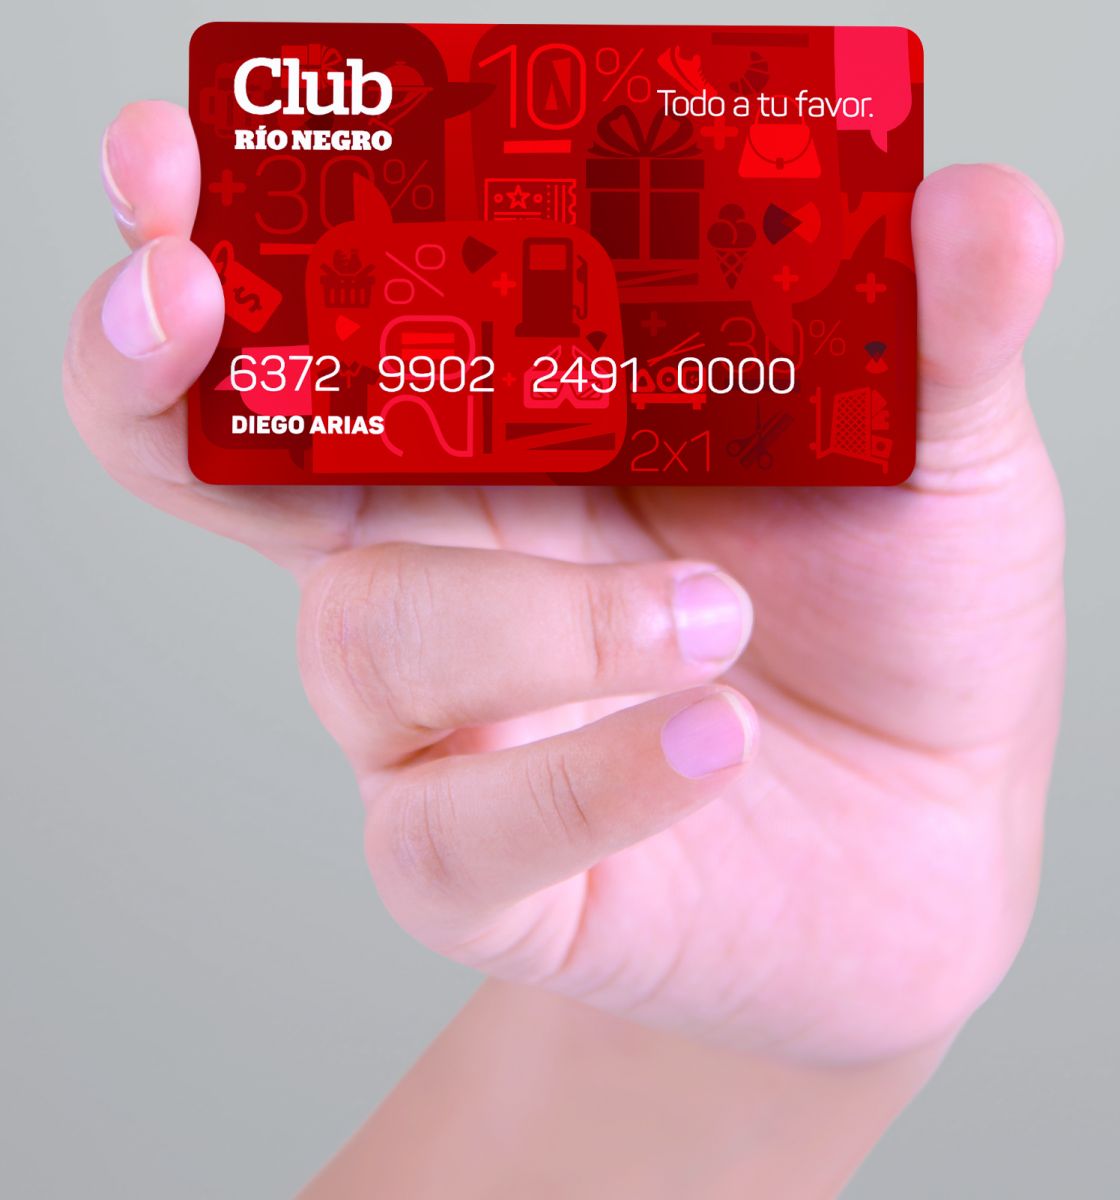 El uso de la tarjeta Club va sumando usuarios día a día en la región.